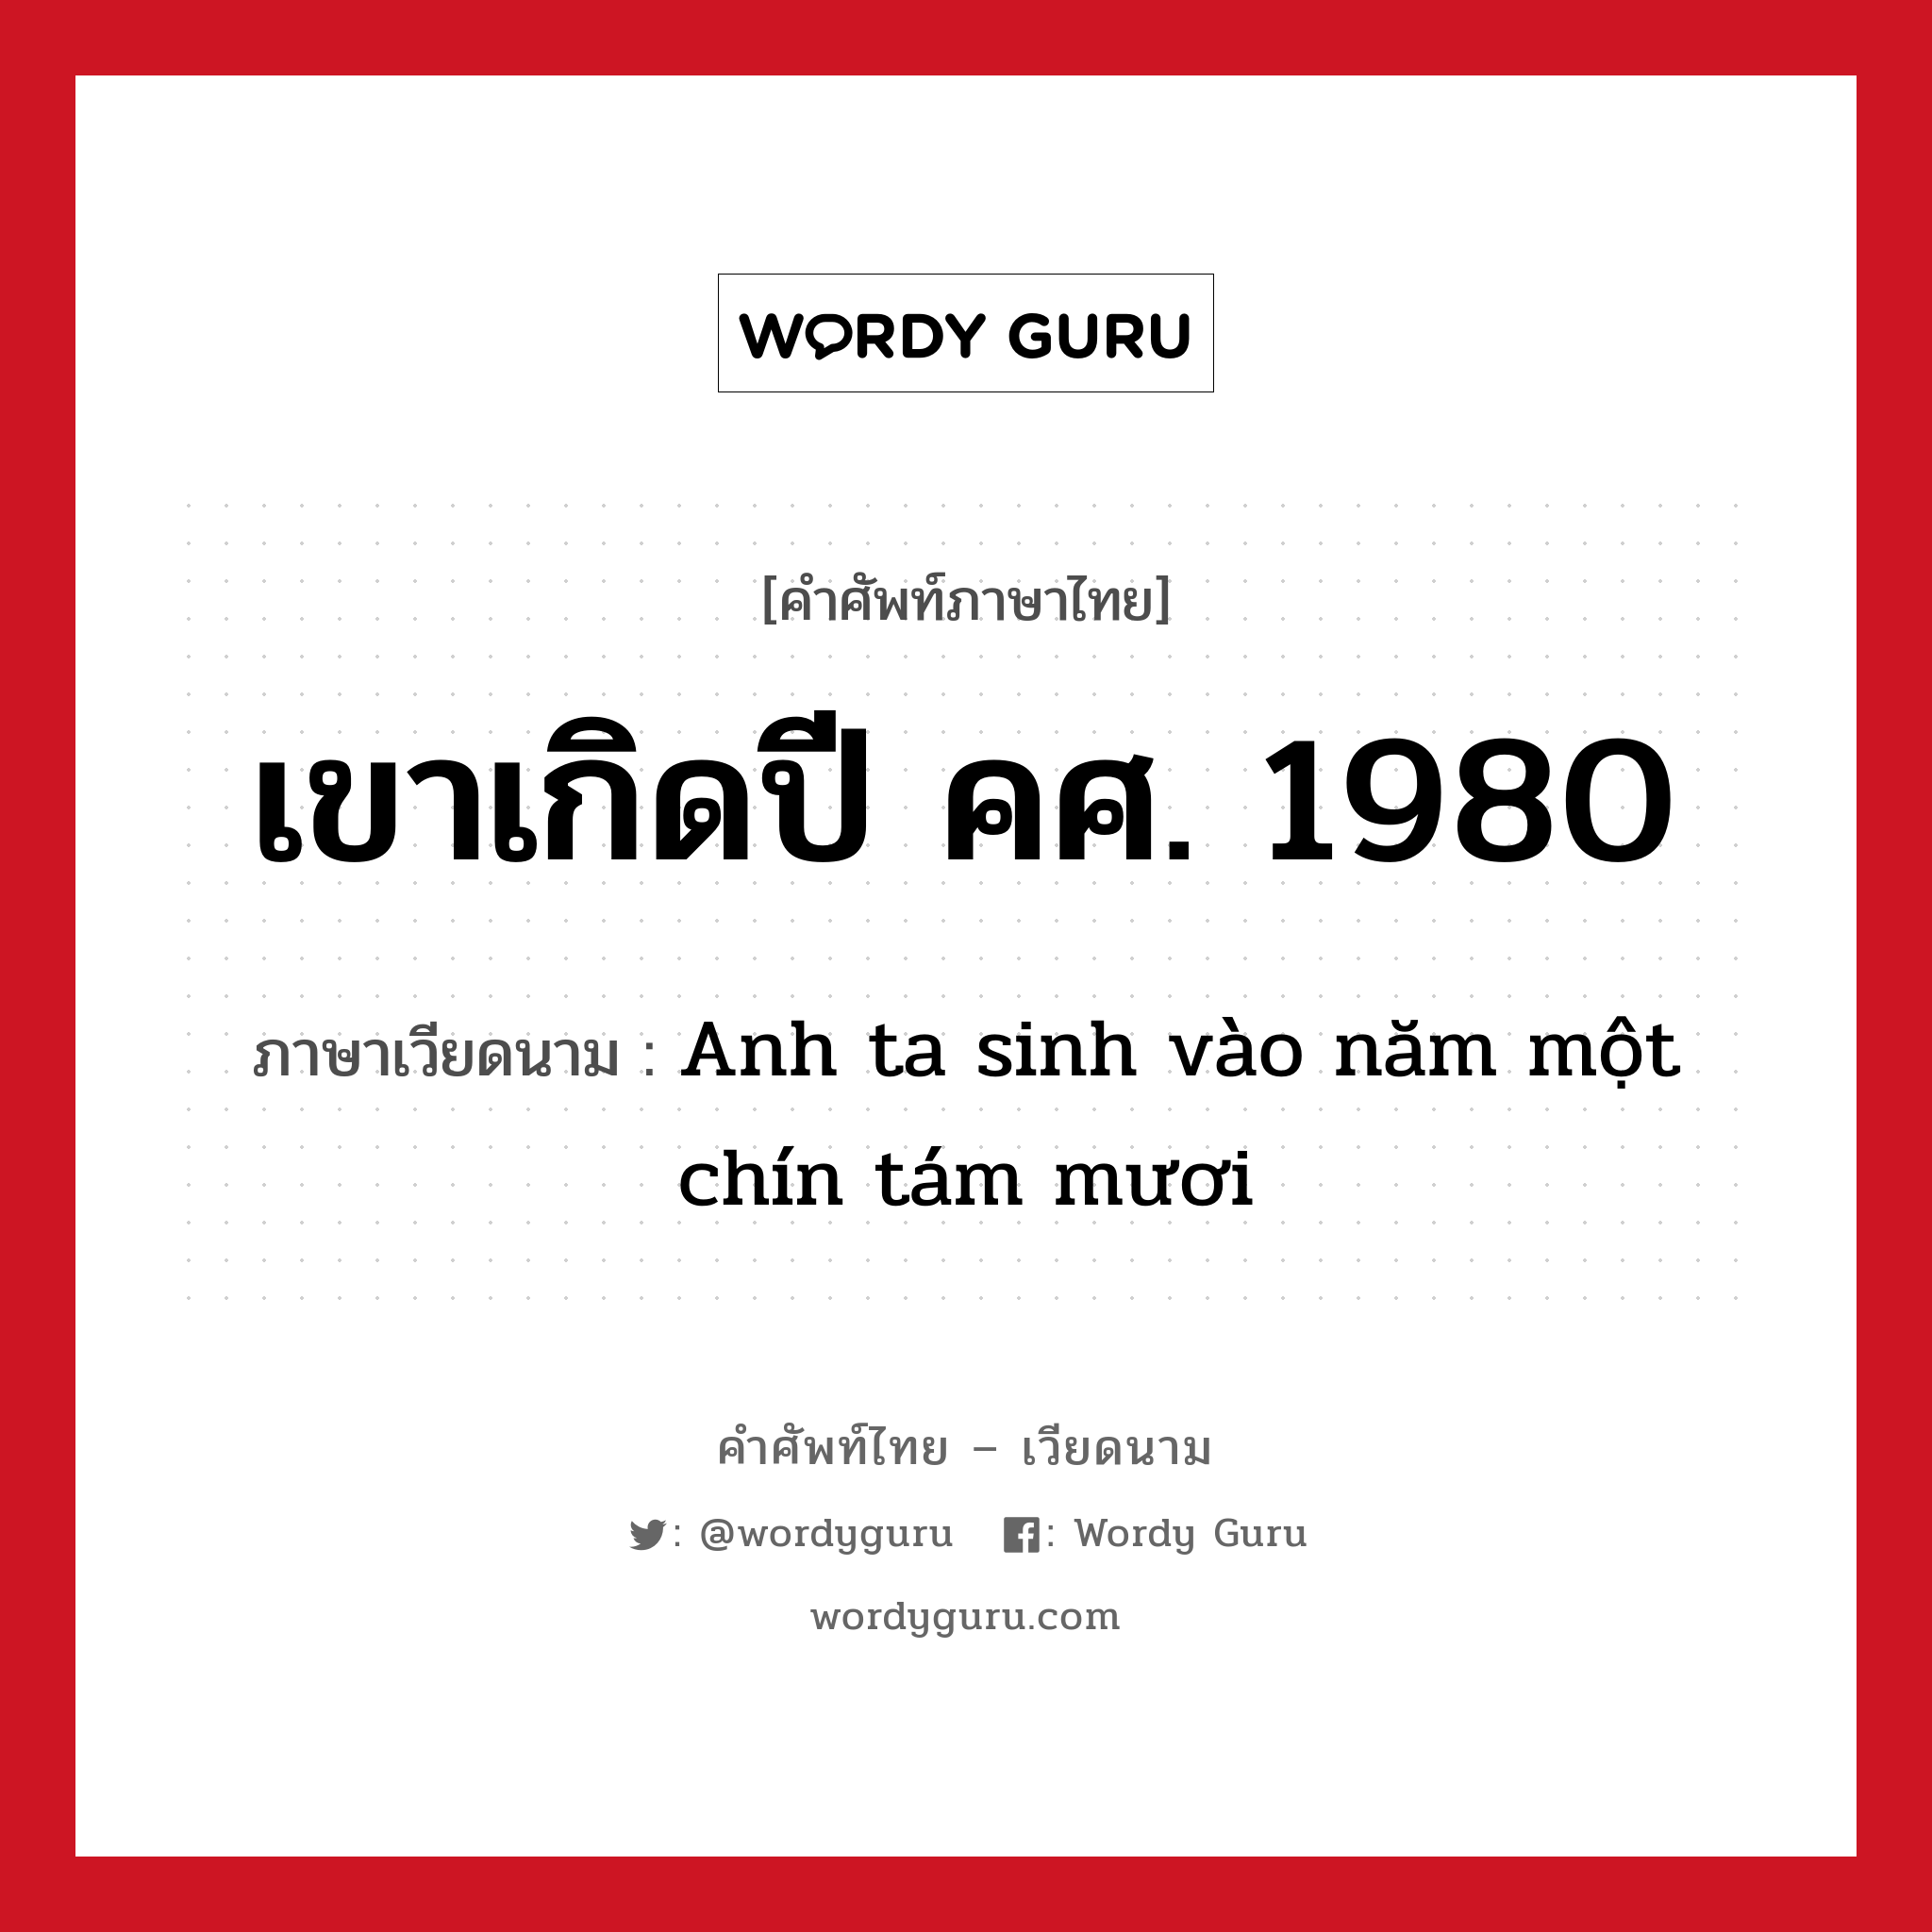 เขาเกิดปี คศ. 1980 ภาษาเวียดนามคืออะไร, คำศัพท์ภาษาไทย - เวียดนาม เขาเกิดปี คศ. 1980 ภาษาเวียดนาม Anh ta sinh vào năm một chín tám mươi หมวด การนับเลขและเวลา หมวด การนับเลขและเวลา